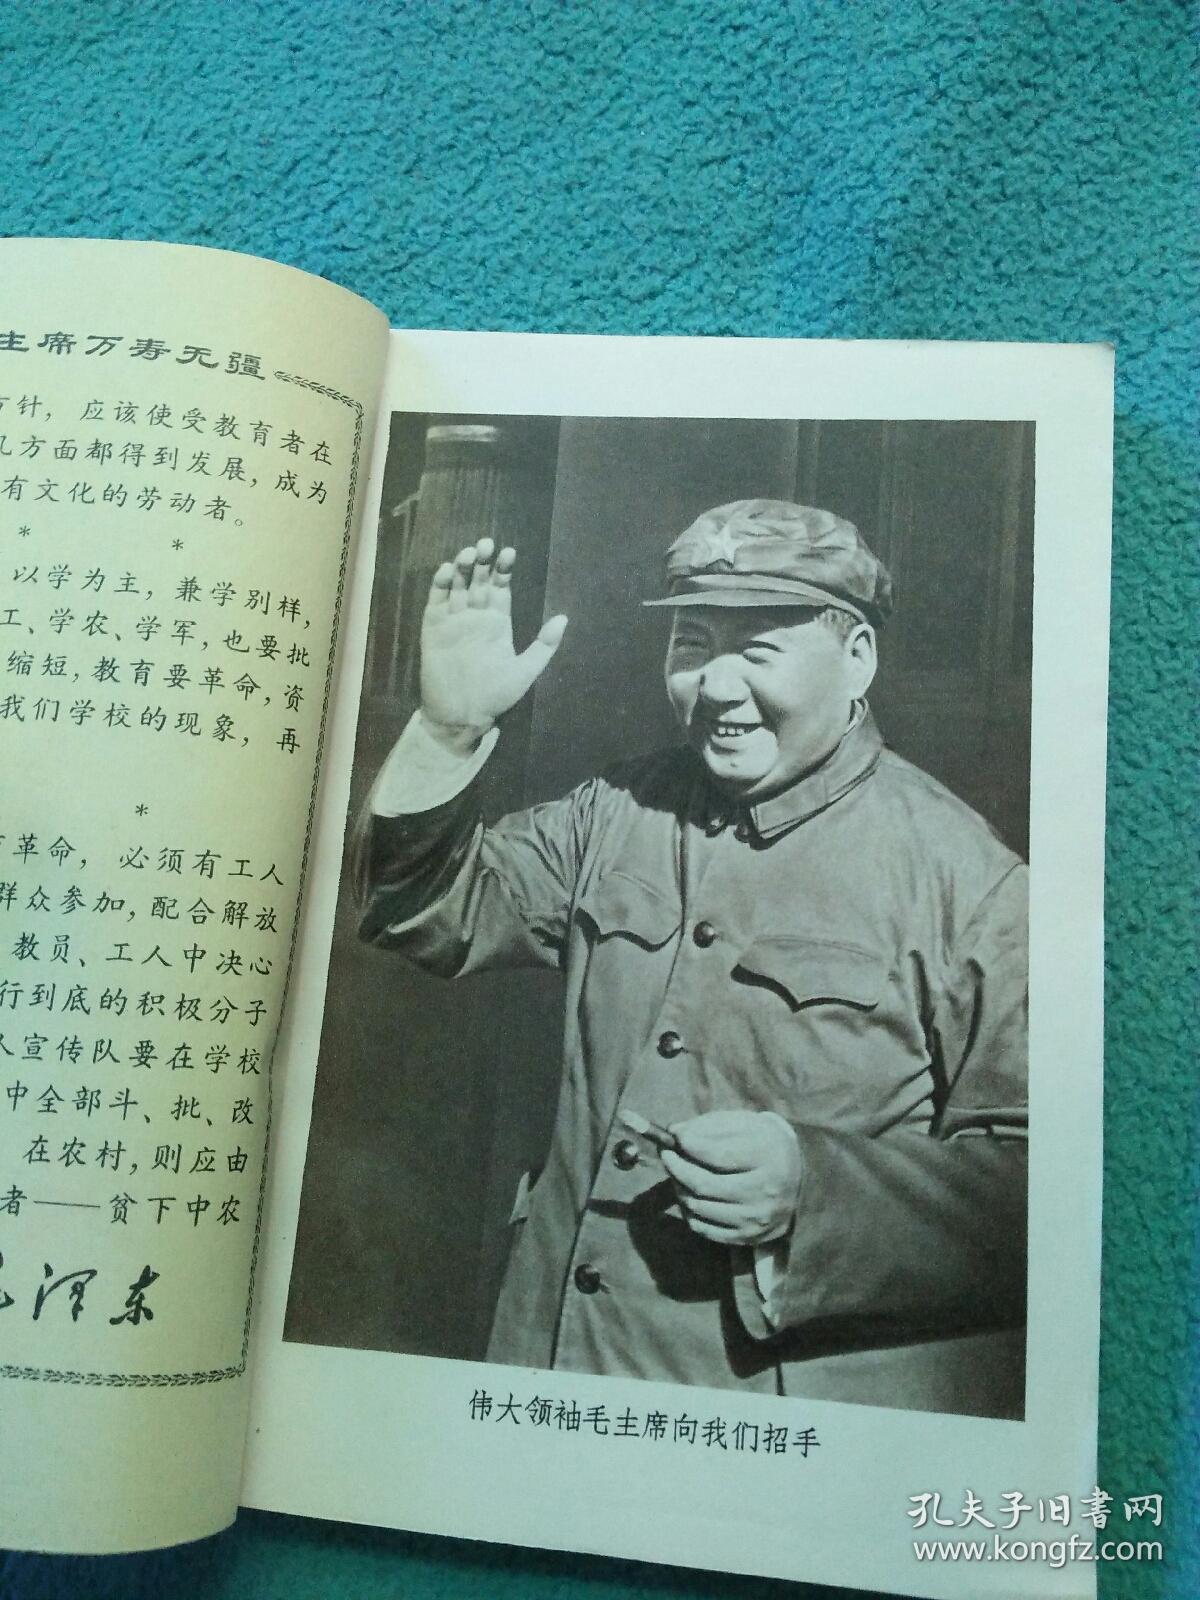 浙江省中学试用课本《农业》（下册）【有毛主席像三页】1970年一版一印